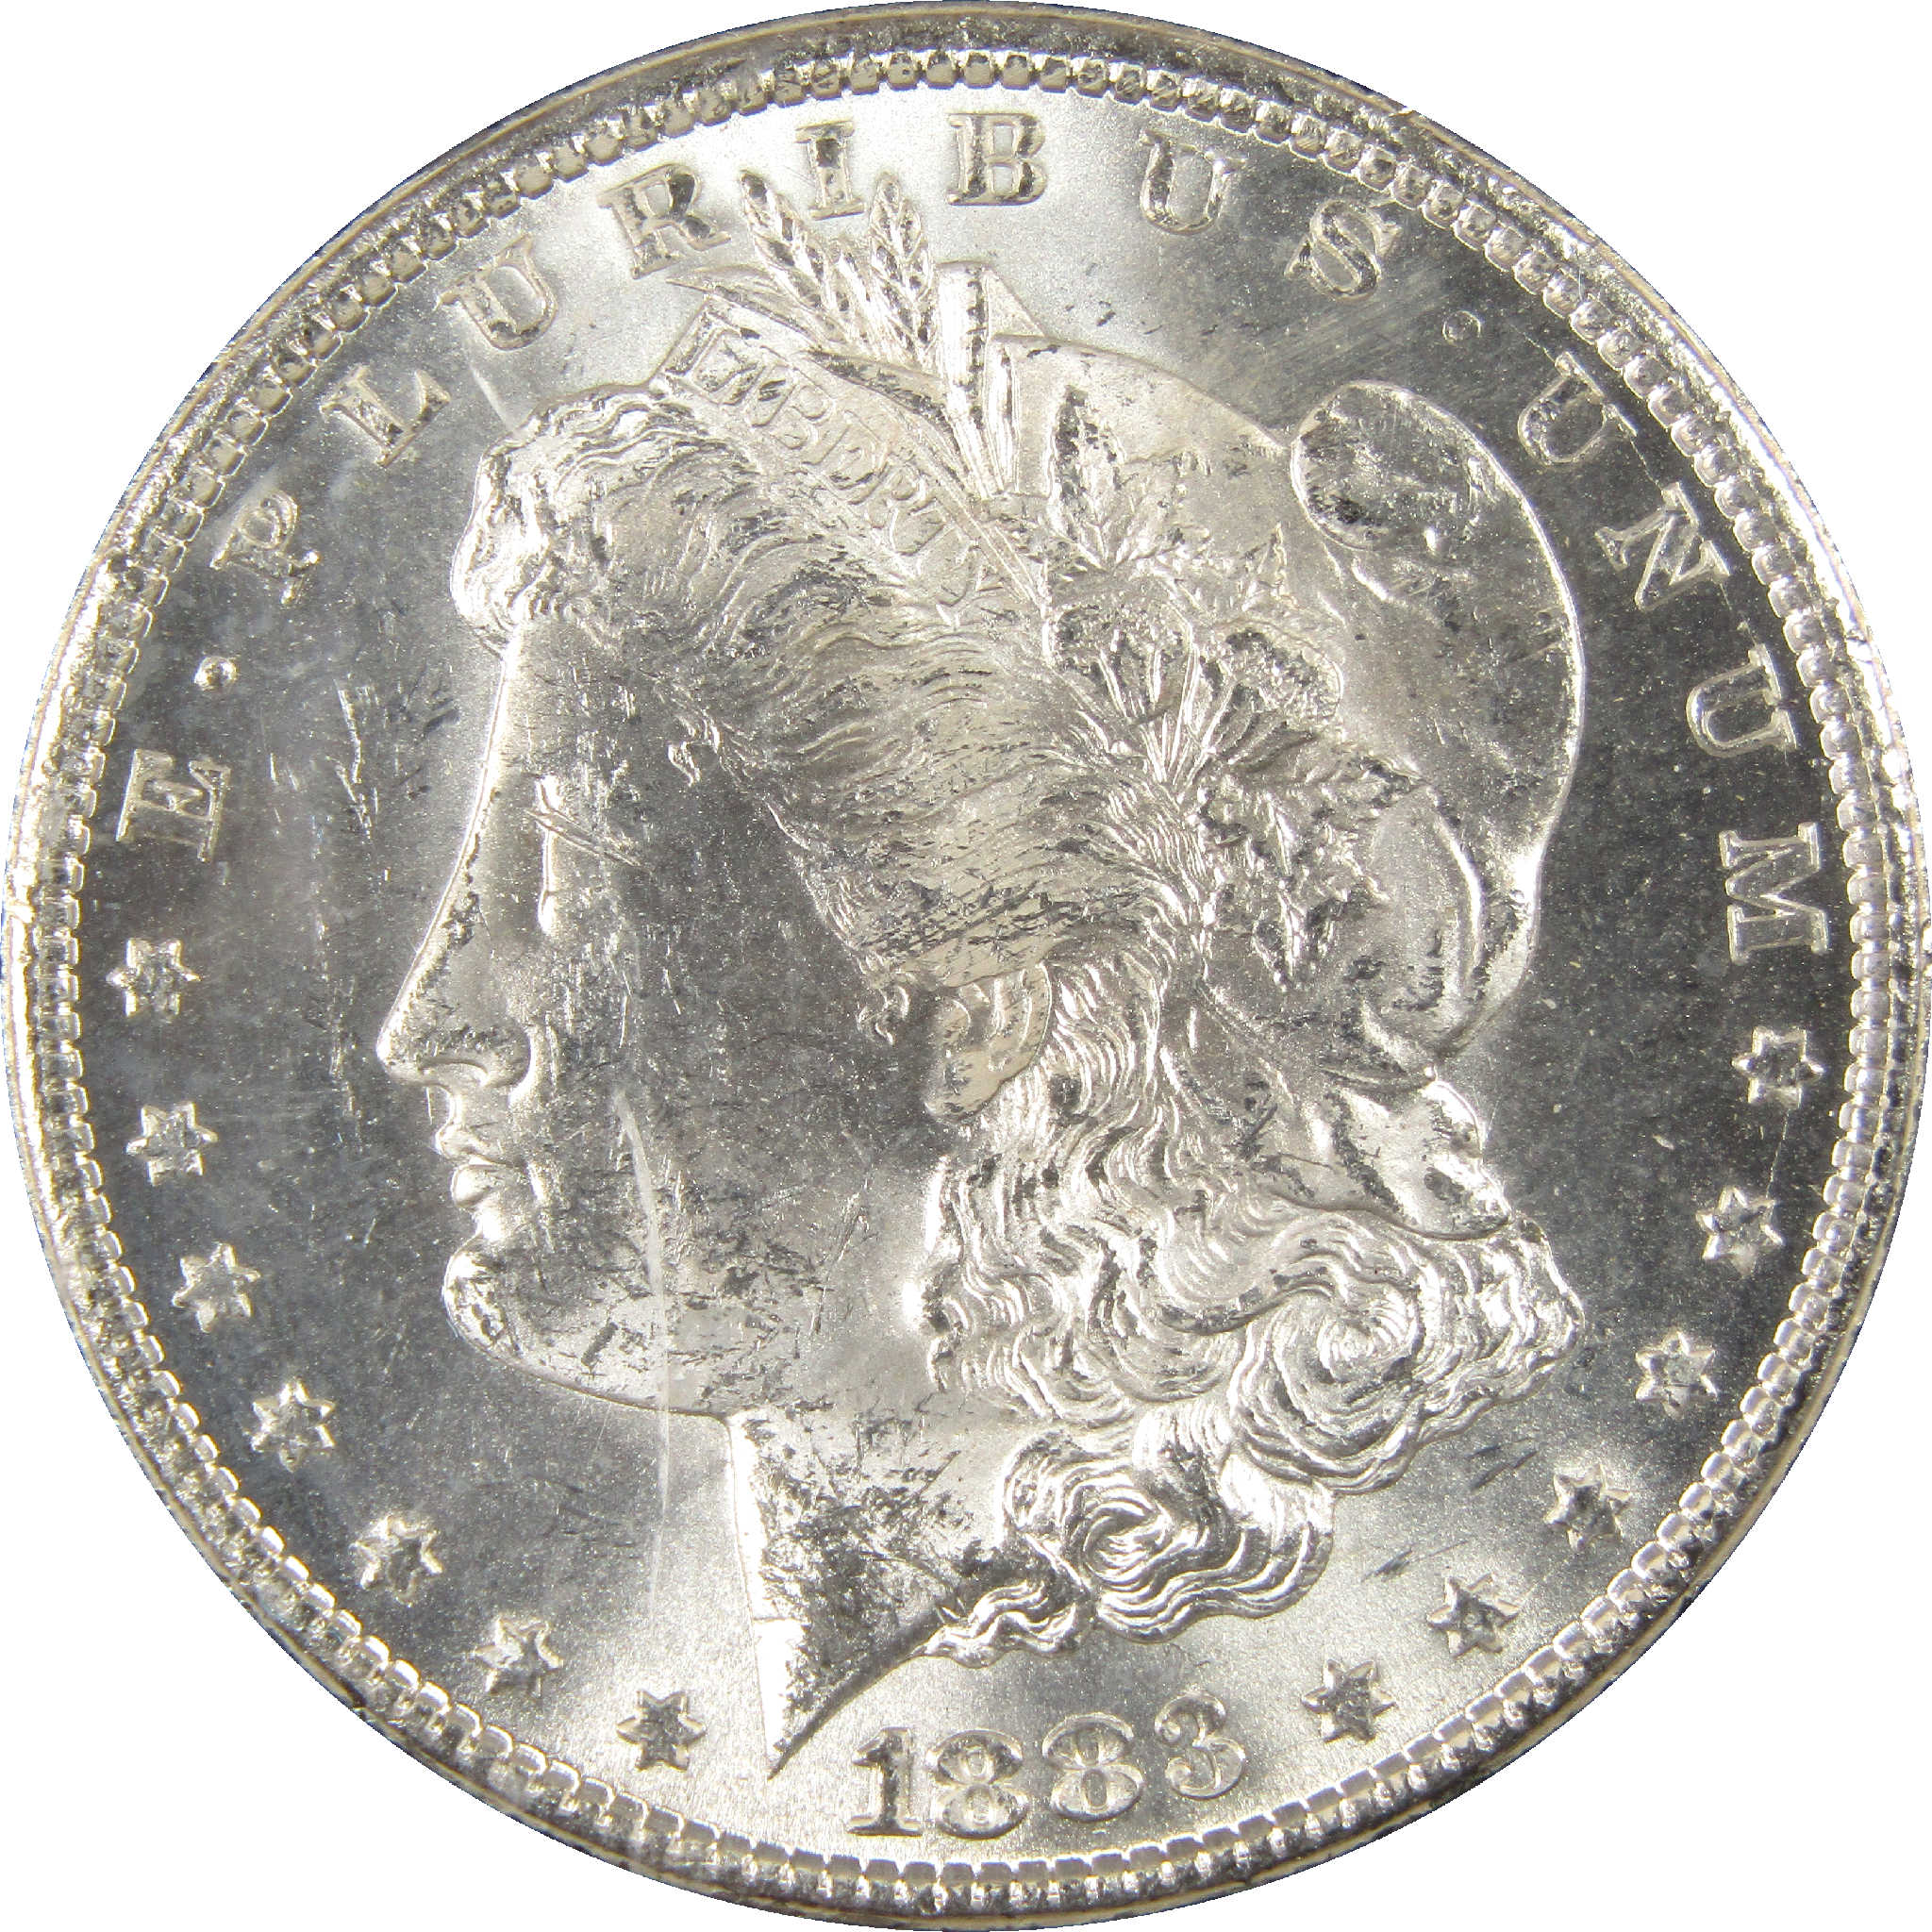 1883 CC GSA Morgan Dollar BU Uncirculated Silver $1 Coin SKU:I11497 - Morgan coin - Morgan silver dollar - Morgan silver dollar for sale - Profile Coins &amp; Collectibles